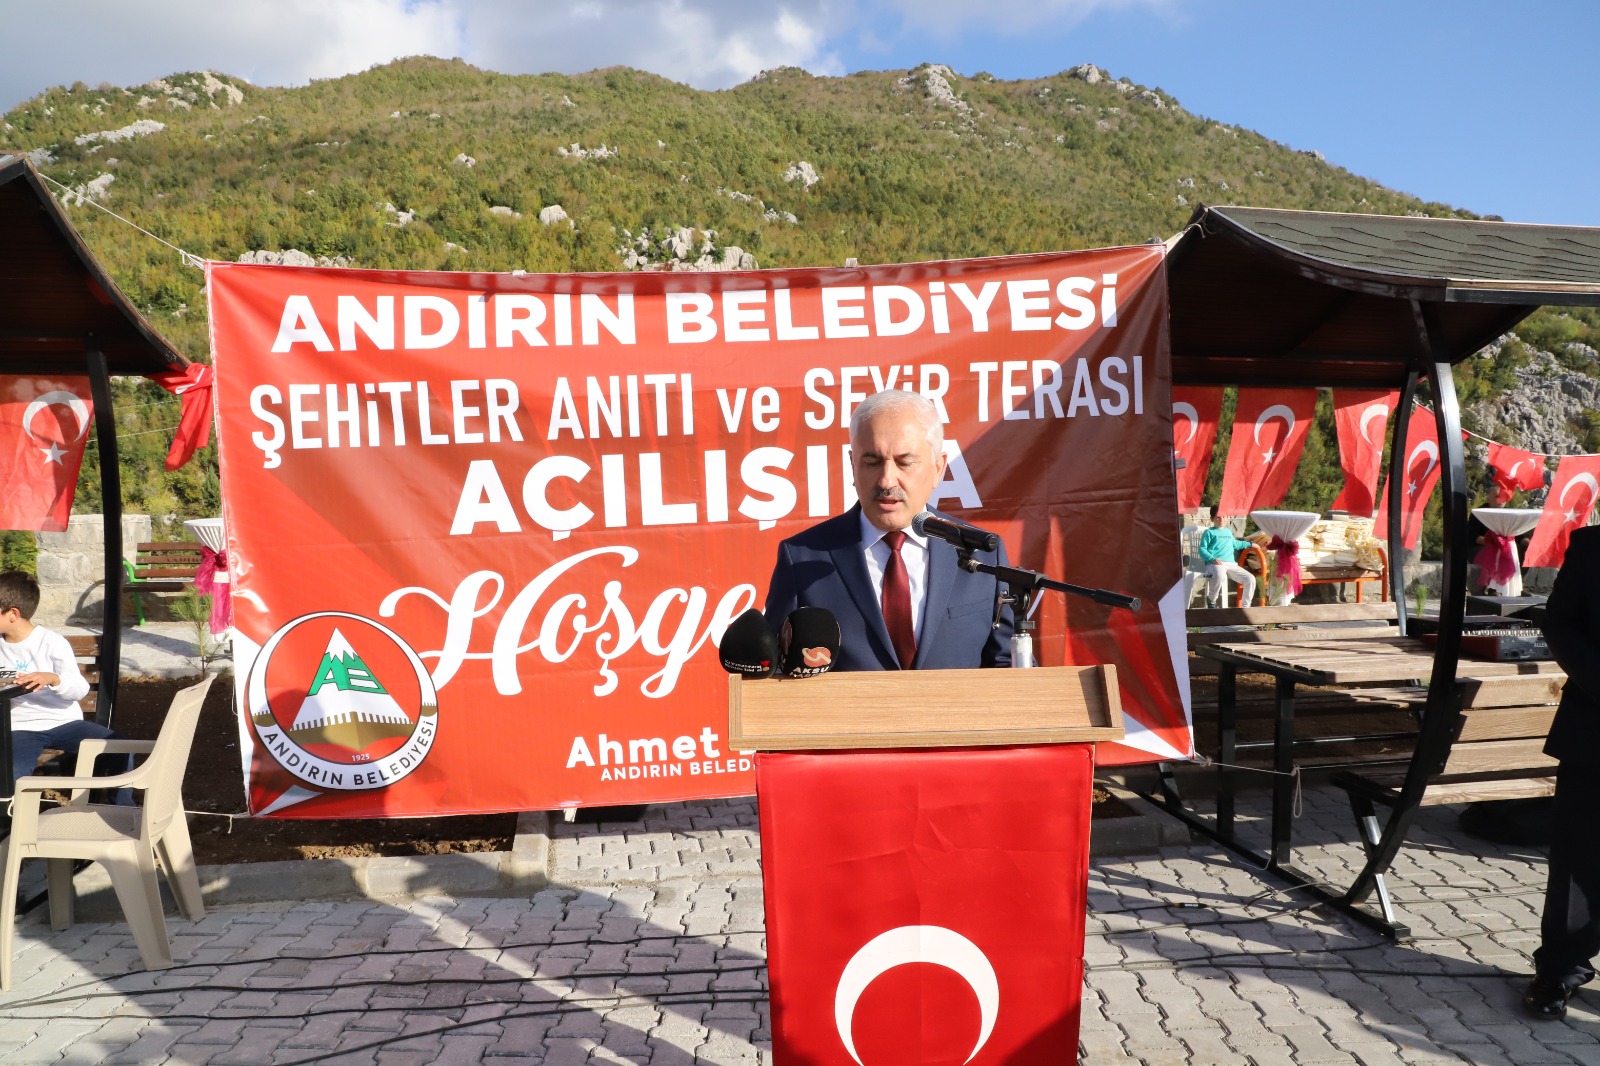 Andırın Belediye Başkanı Ahmet Doğan : “Tüm Katılımcılara Teşekkür Ediyorum”